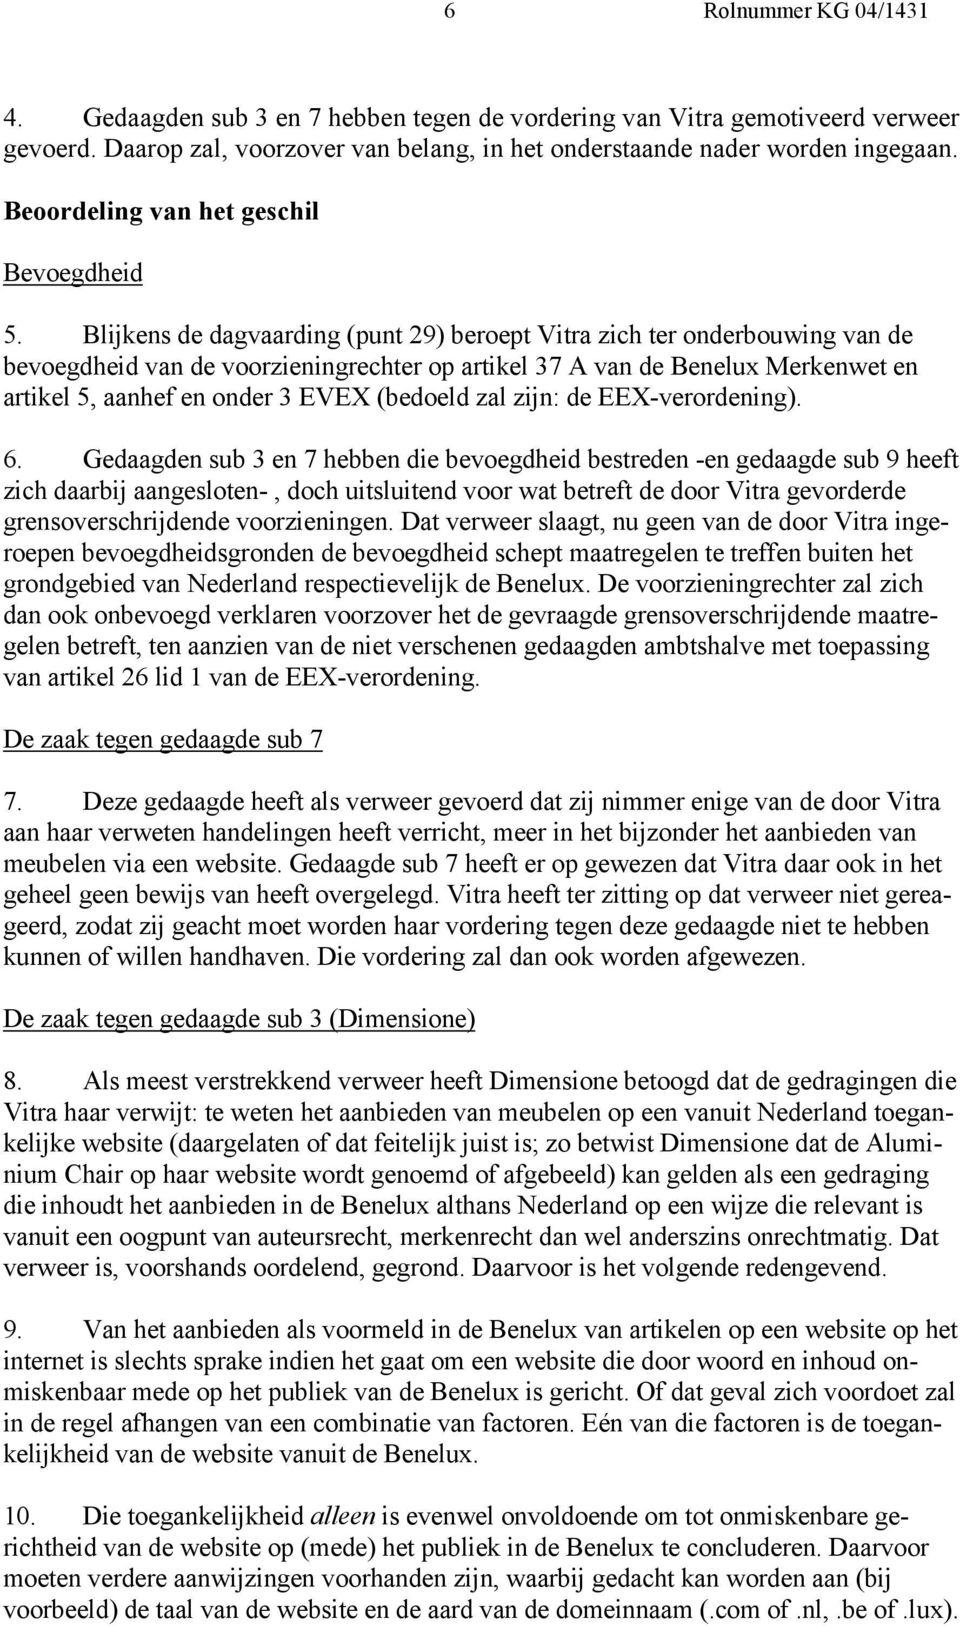 Blijkens de dagvaarding (punt 29) beroept Vitra zich ter onderbouwing van de bevoegdheid van de voorzieningrechter op artikel 37 A van de Benelux Merkenwet en artikel 5, aanhef en onder 3 EVEX